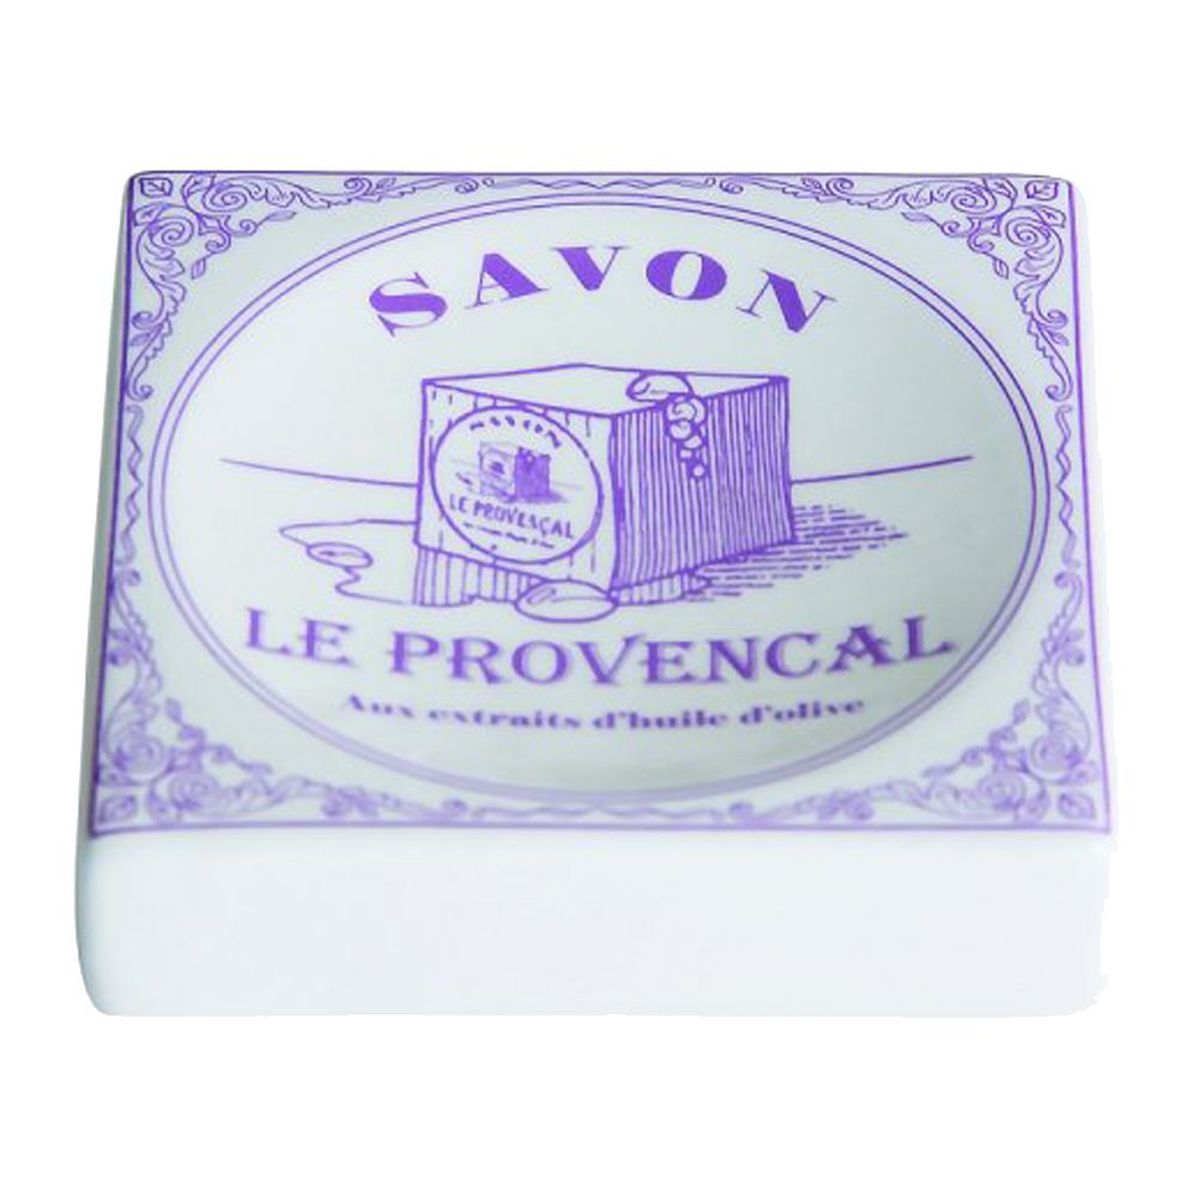 Porte savon - Le Provenal aux extraits d'huile d'Olive